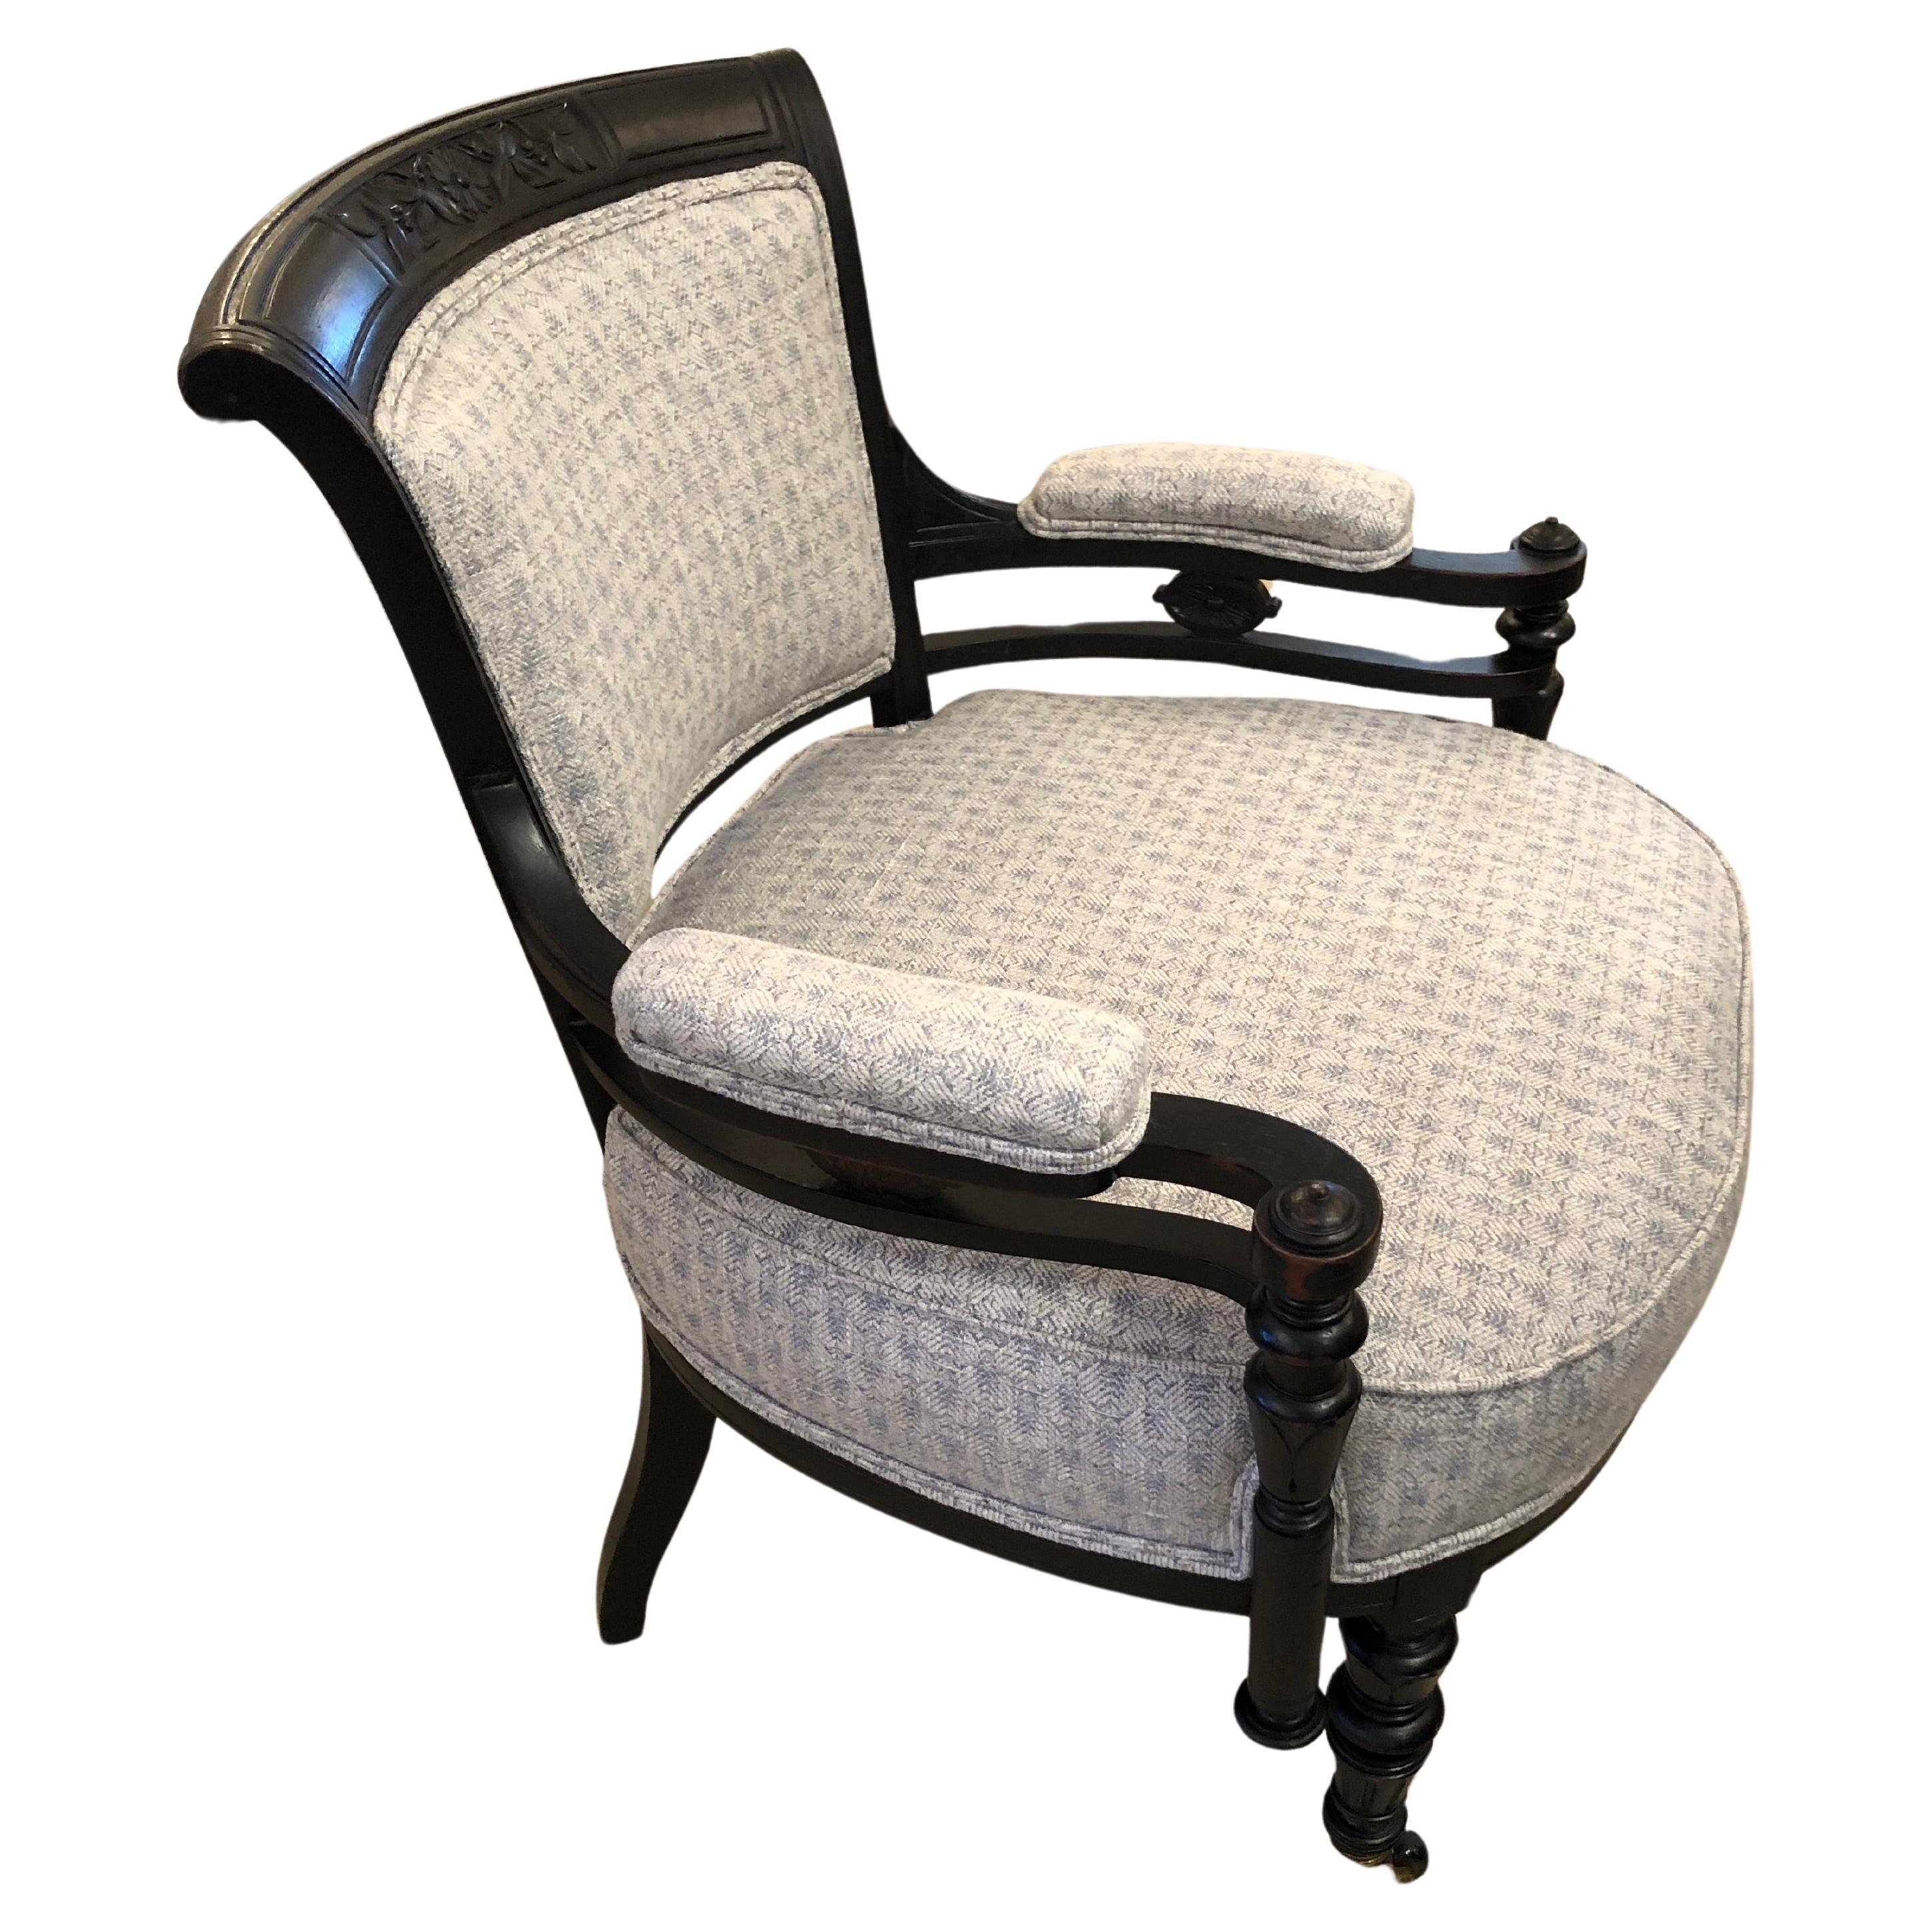 Charmant fauteuil compact en bois ébonisé sculpté de style victorien décoratif, avec des fleurs sculptées sur le dessus et des détails fantaisistes en bois tourné.  La chaise a été magnifiquement mise à jour et rehaussée d'un nouveau revêtement gris